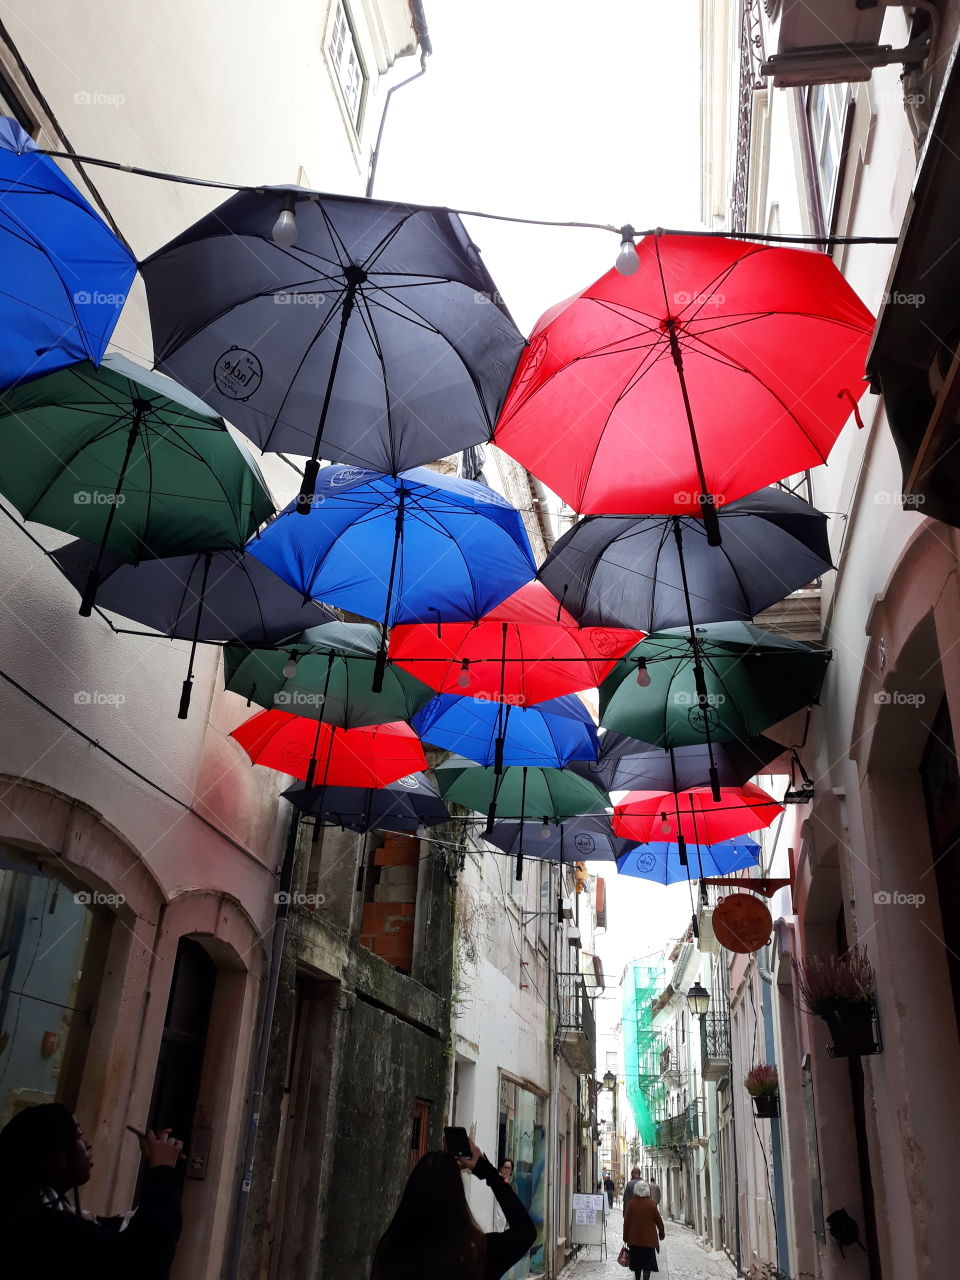 Pelas estreitas ruas da cidade de Coimbra